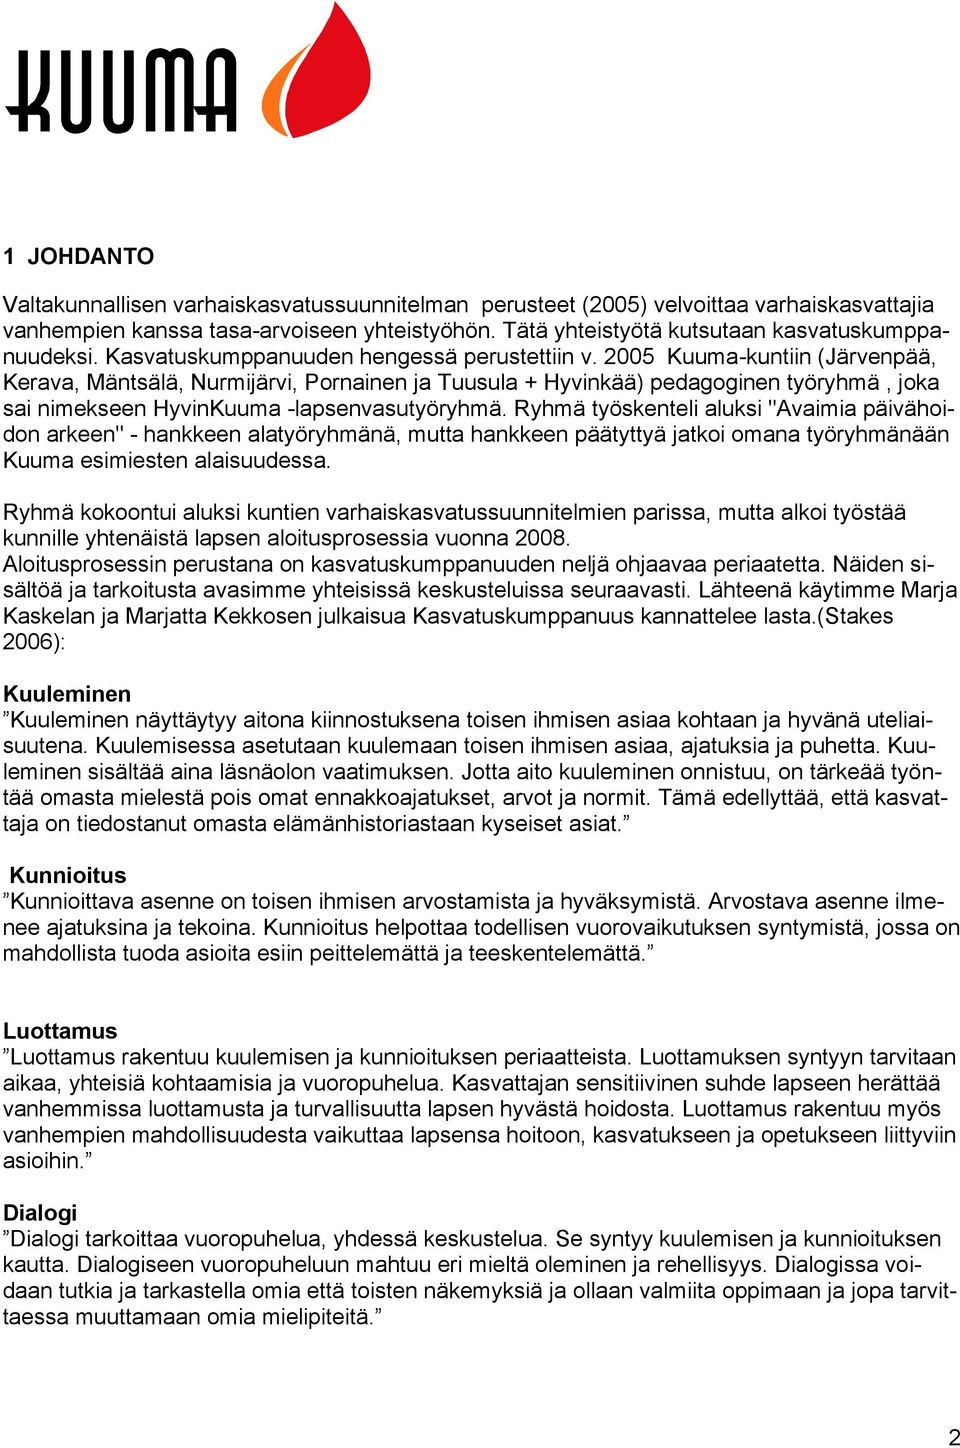 2005 Kuuma-kuntiin (Järvenpää, Kerava, Mäntsälä, Nurmijärvi, Pornainen ja Tuusula + Hyvinkää) pedagoginen työryhmä, joka sai nimekseen HyvinKuuma -lapsenvasutyöryhmä.